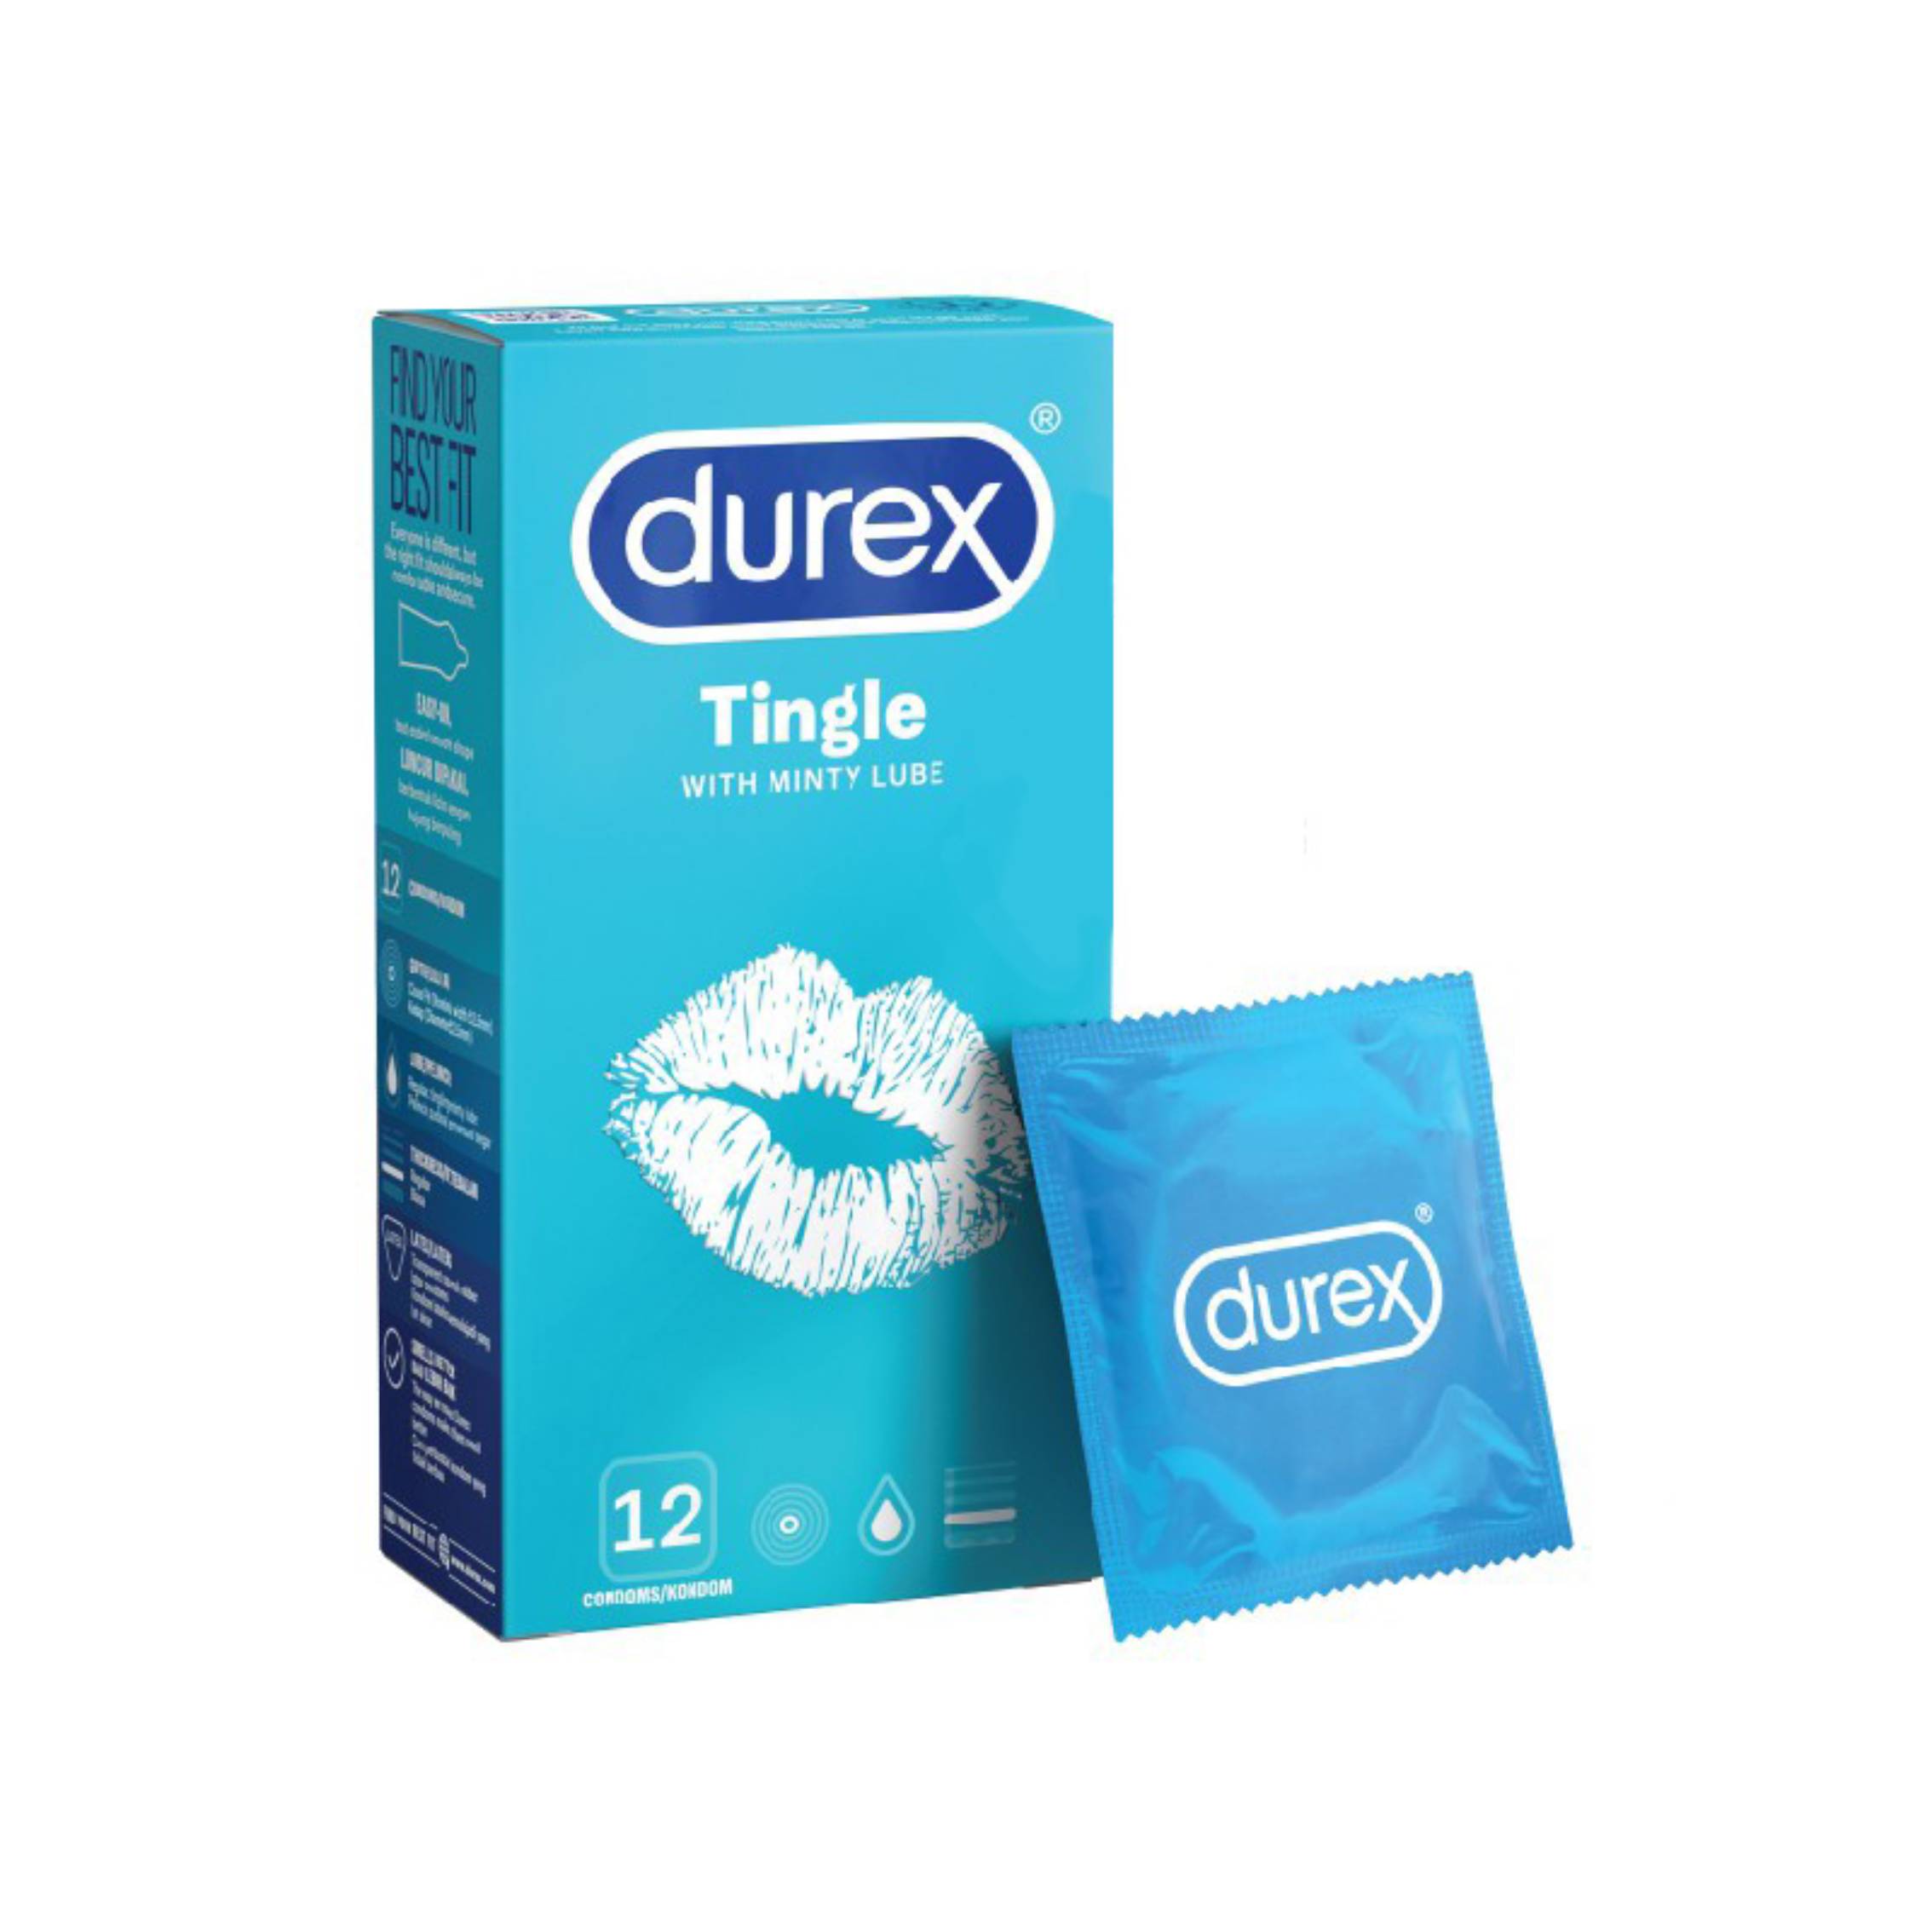 Durex Tingle Condom 12s - DoctorOnCall Online Pharmacy